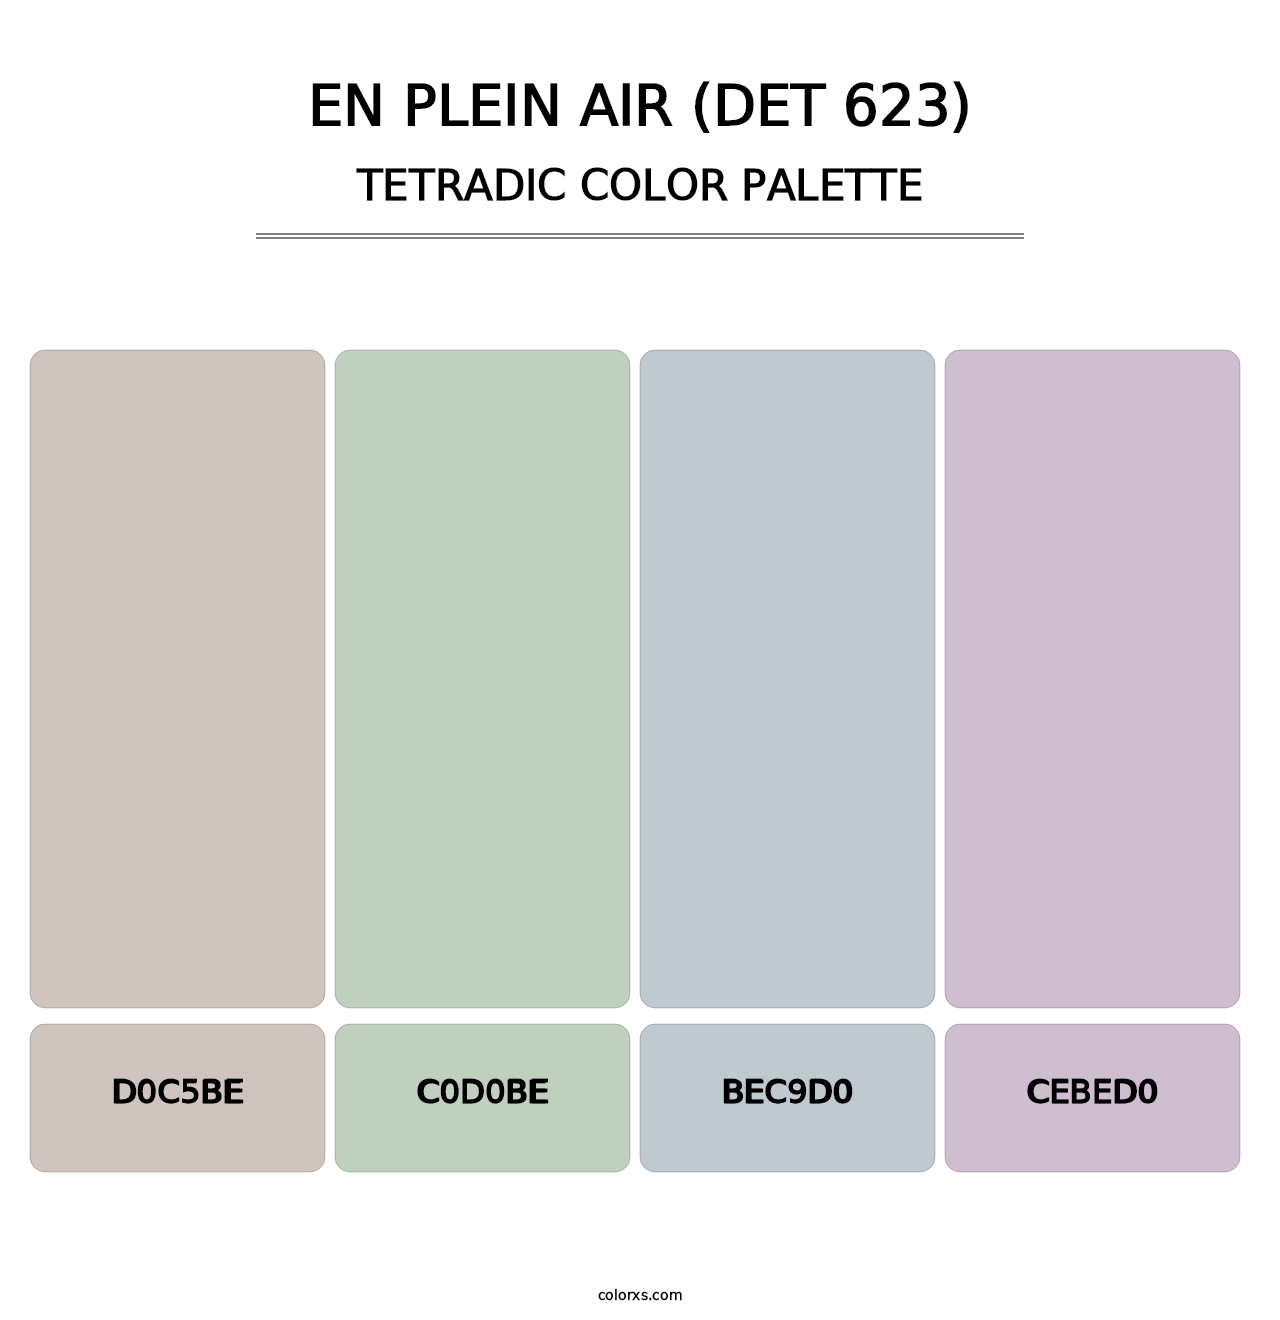 En Plein Air (DET 623) - Tetradic Color Palette